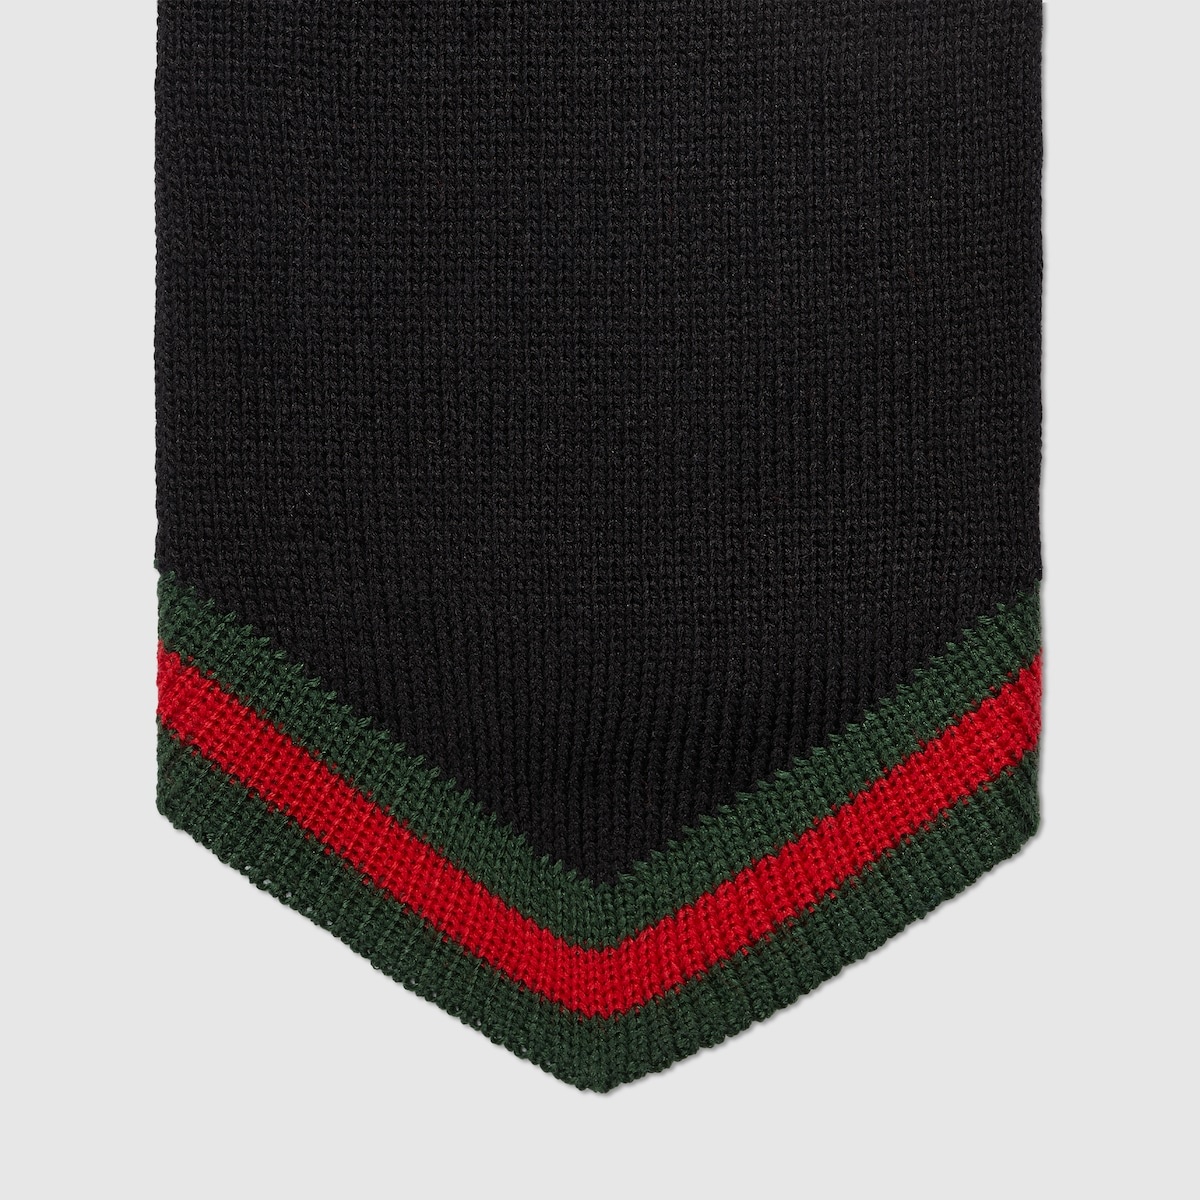 Silk knit tie with Web - 3